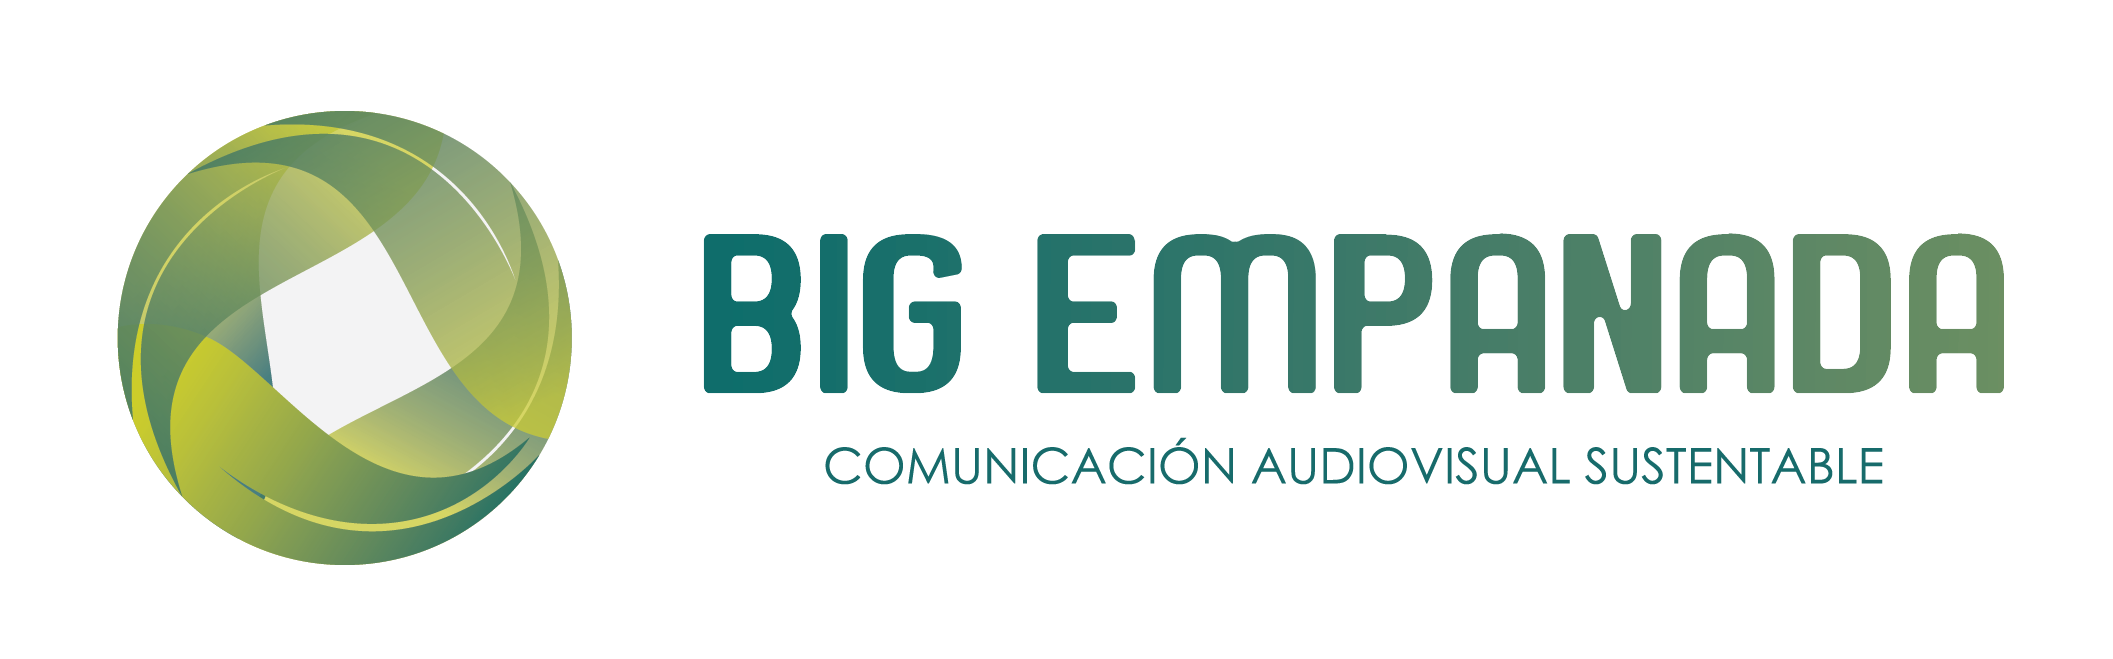 Big Empanada – Comunicación Audiovisual Sustentable